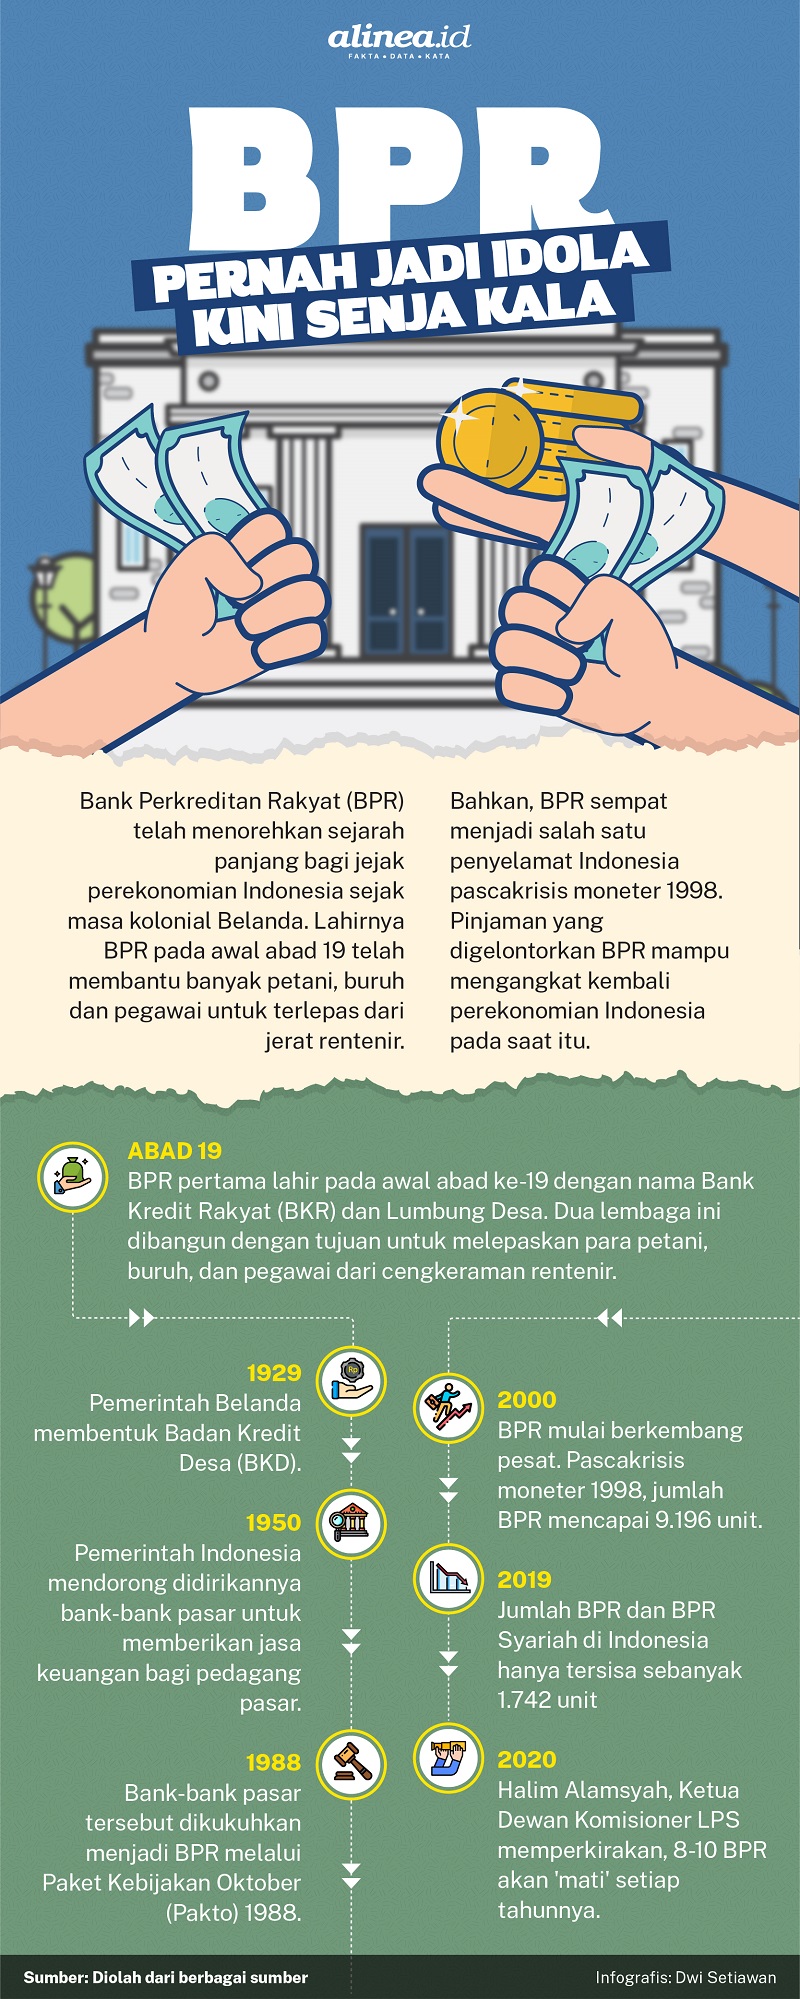 Infografik sejarah perkembangan Bank Perkreditan Rakyat (BPR). Alinea.id/Dwi Setiawan